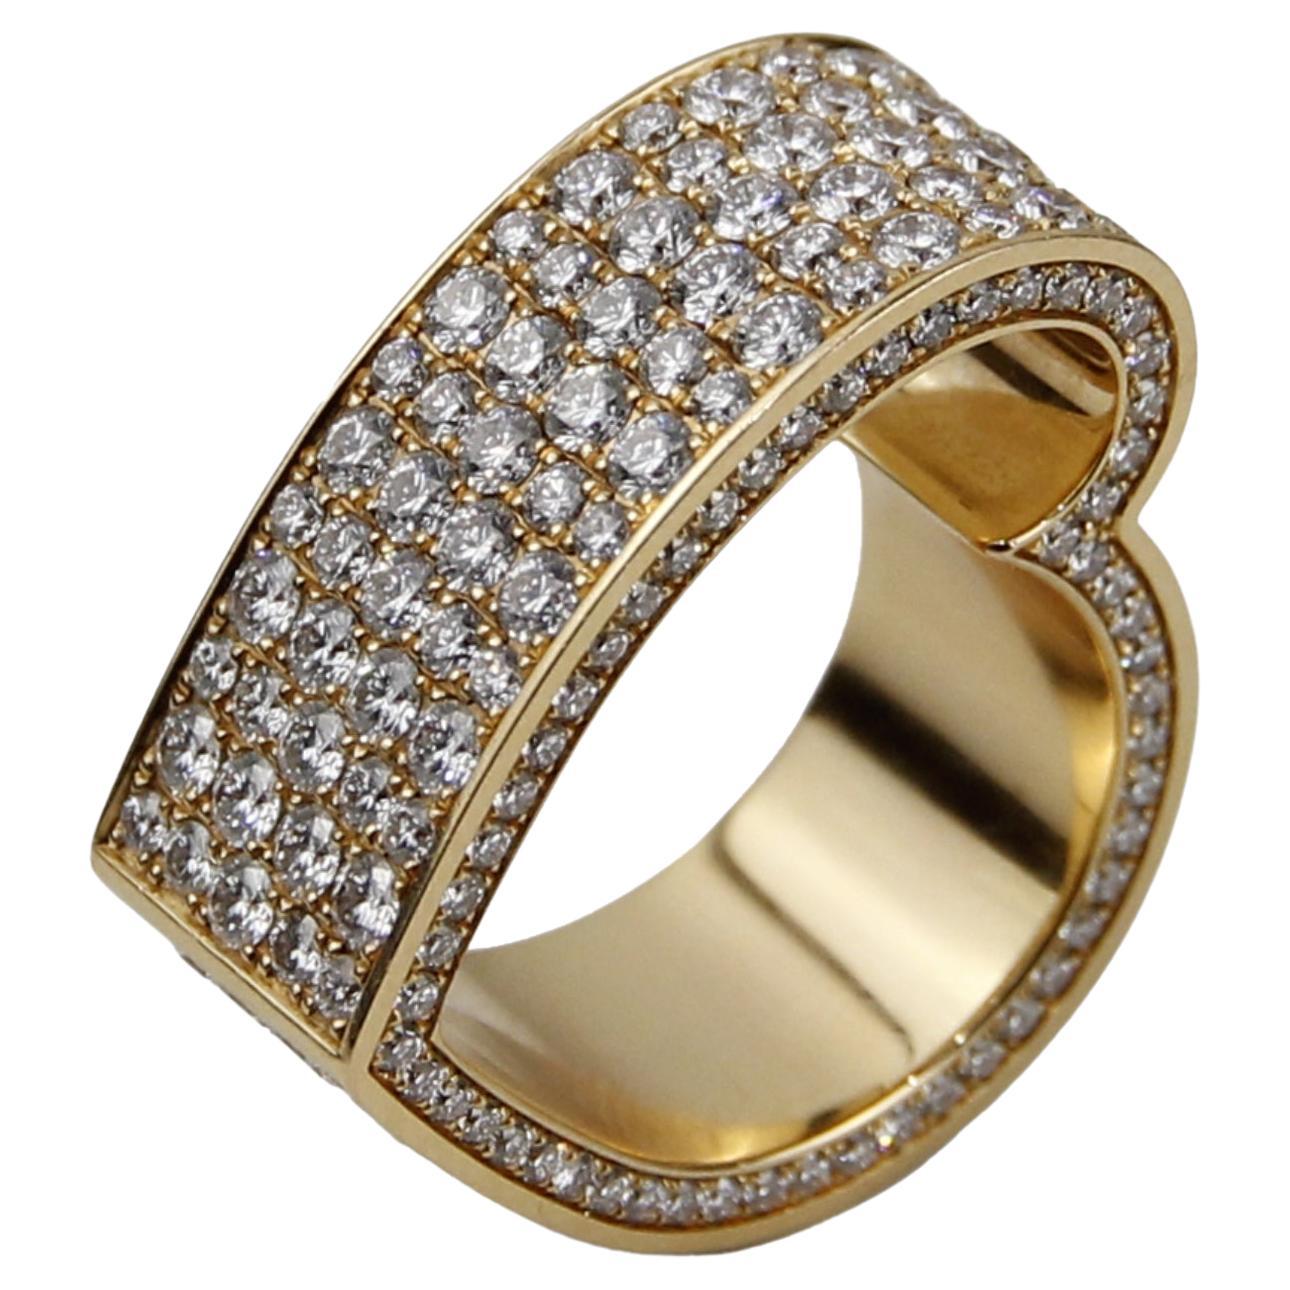 Roger Dubuis, bague cœur en or jaune 18 carats avec diamants de 5,67 carats